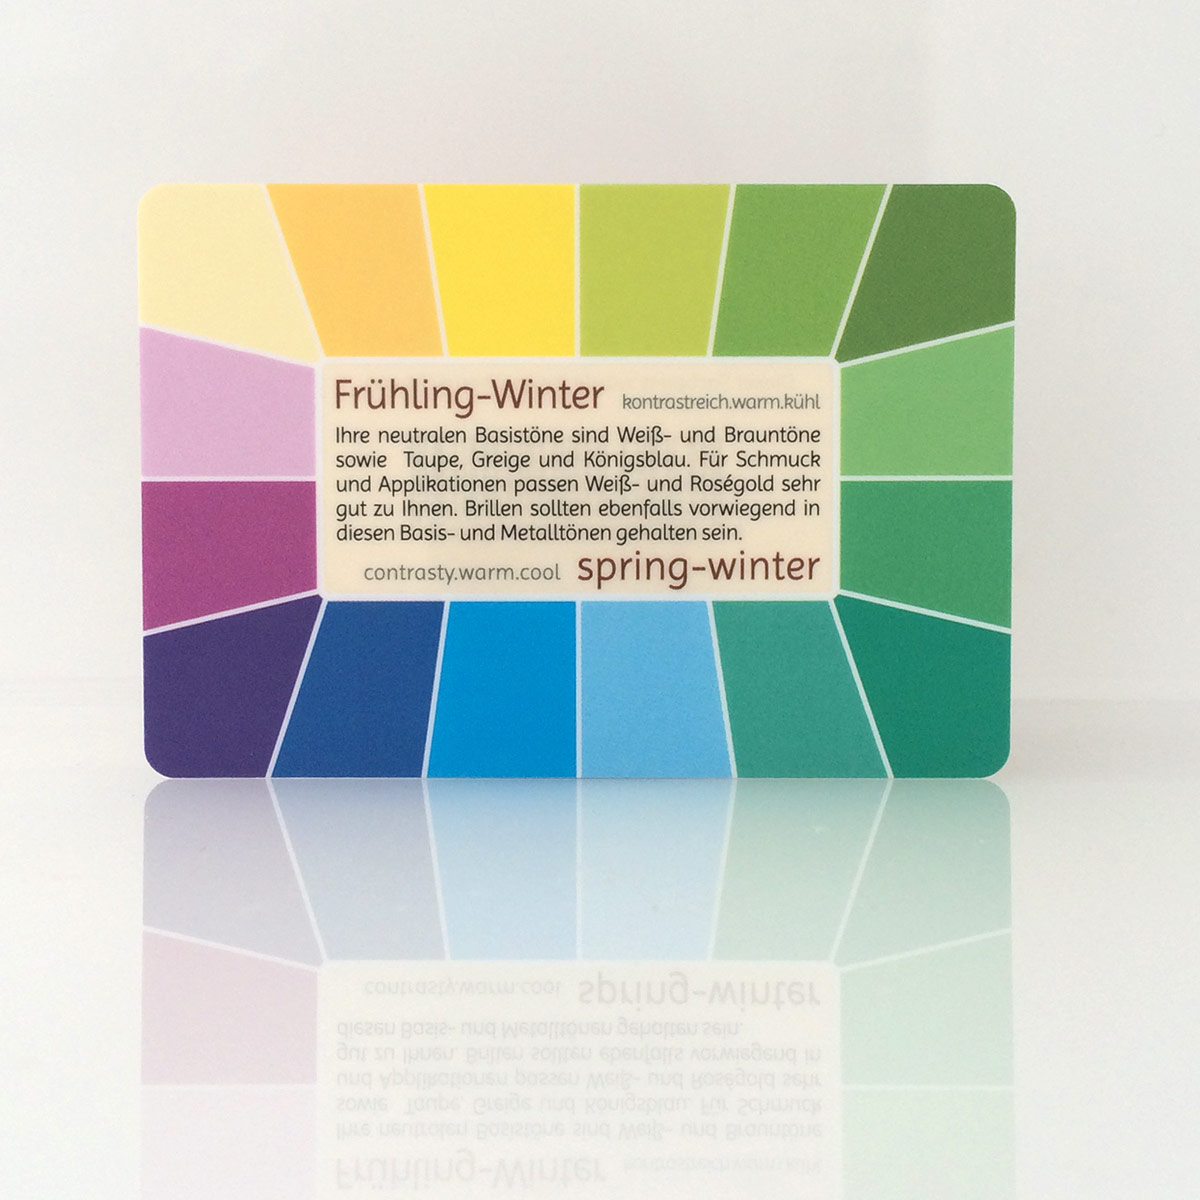 Farbpass Frühling-Wintertyp zur Farbberatung, Vorderseite - Memo | Komood